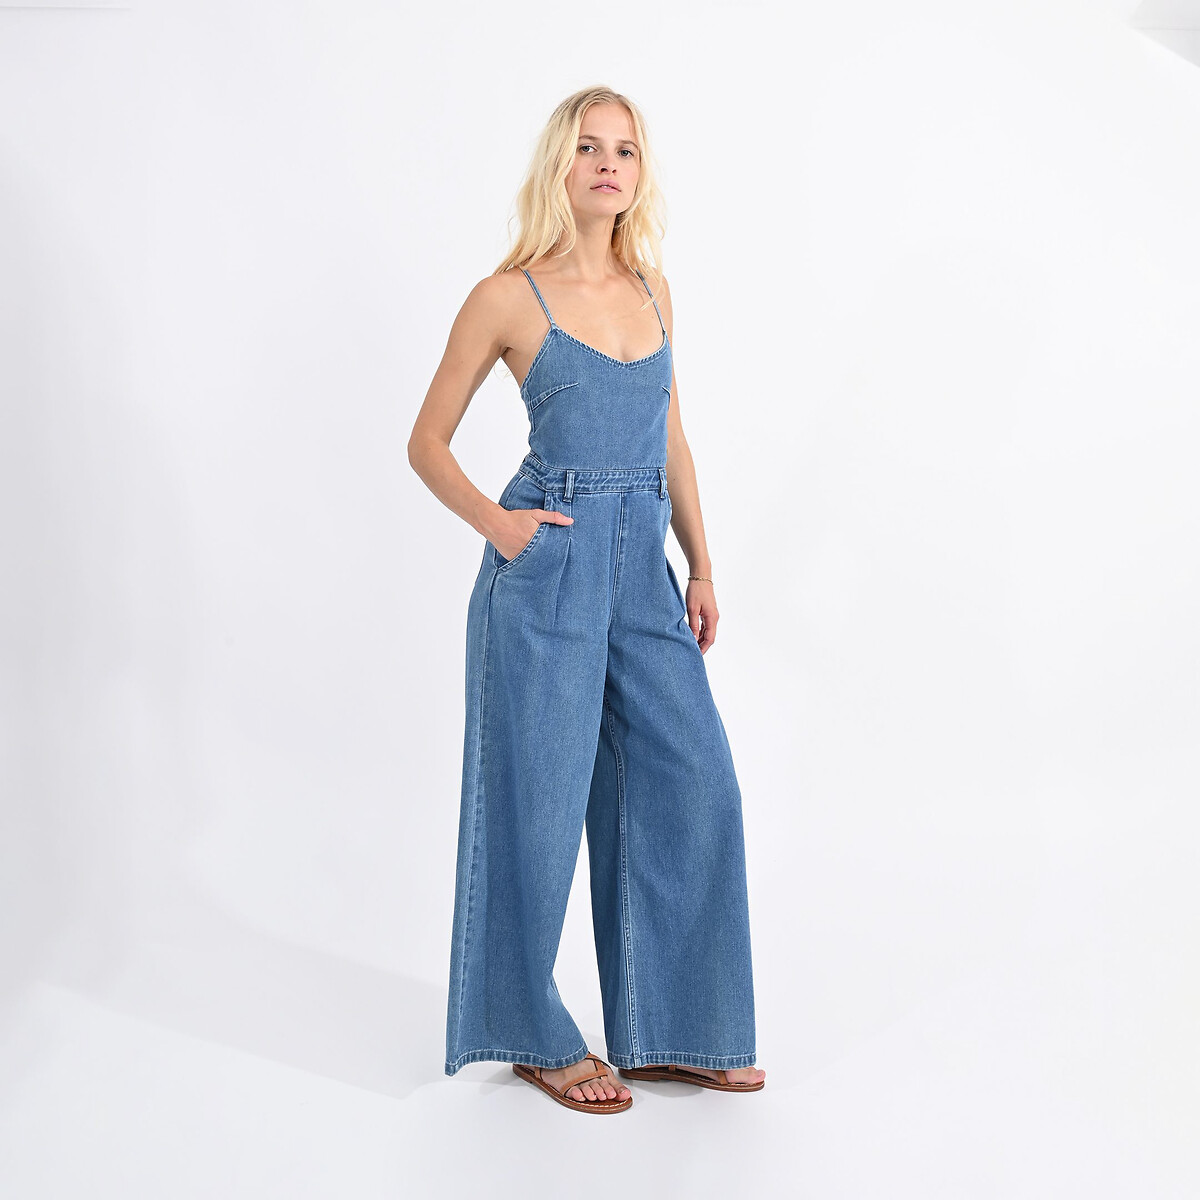 Комбинезон длинный из джинсовой ткани на тонких бретелях  XS синий LaRedoute, размер XS